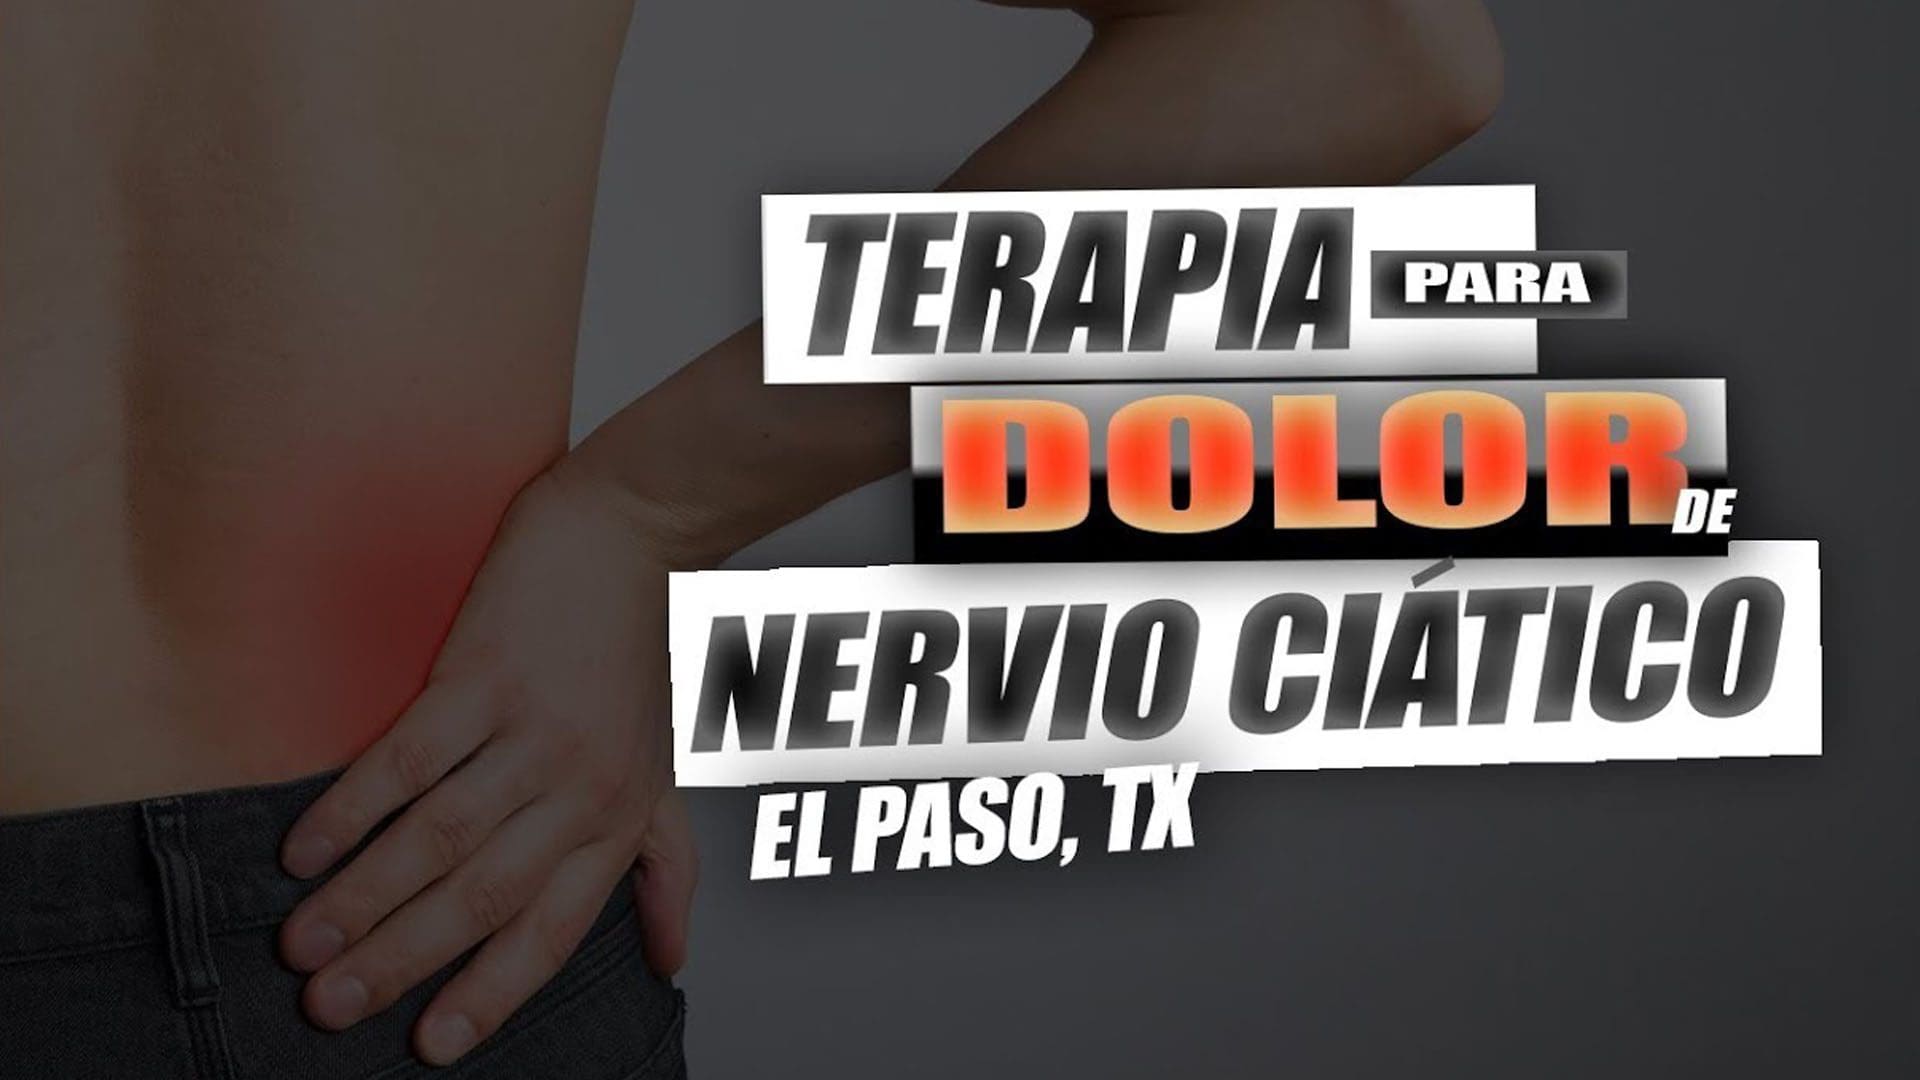 Tratamiento para dolor de Nervio Ciatico | El Paso, Tx